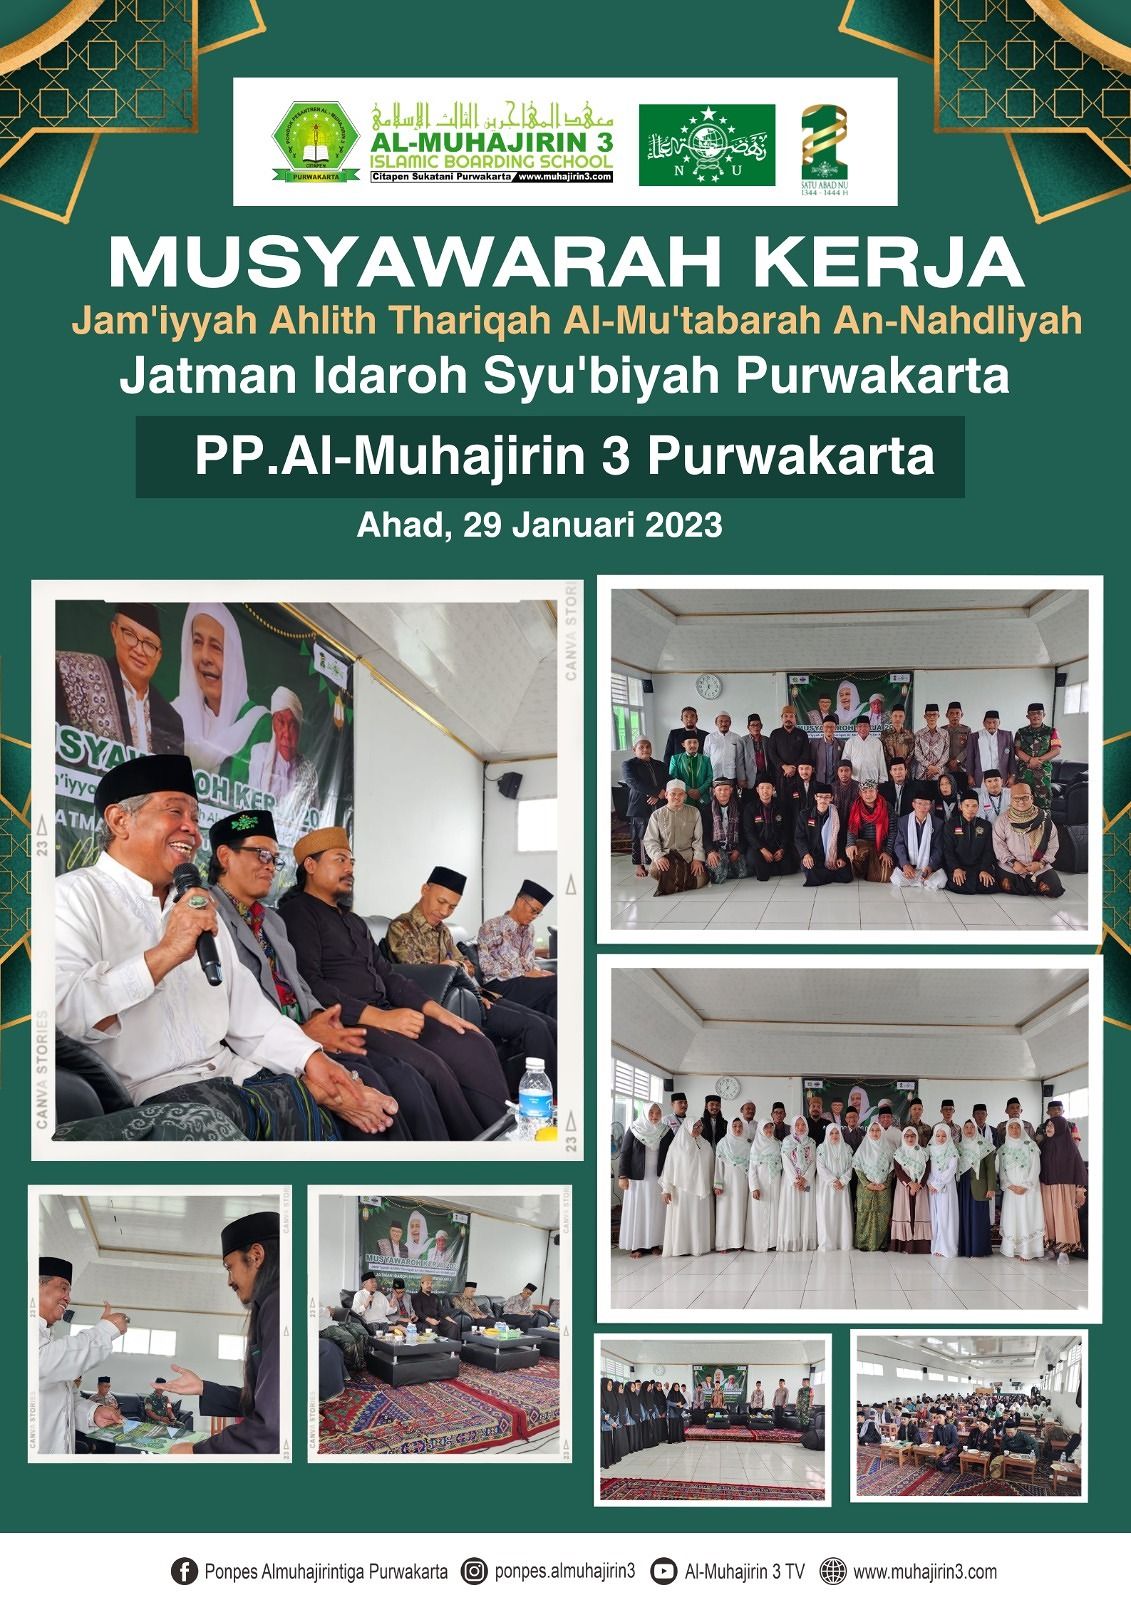 Jatman Purwakarta Gelar Musyawarah Kerja 2023 di PP.Al-Muhajirin 3 